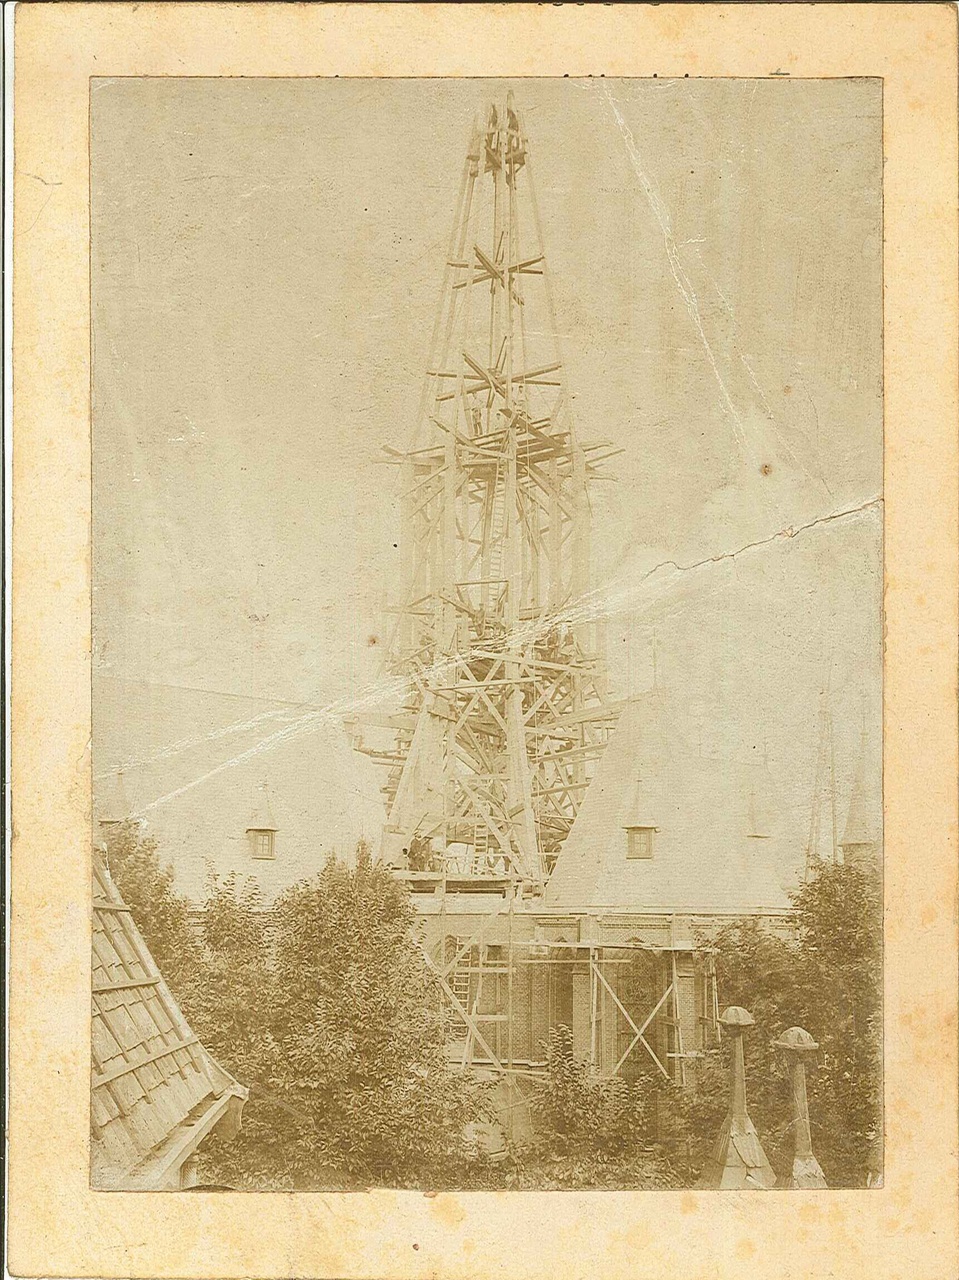 Foto van een torenspits in aanbouw (van de Vondelkerk?).